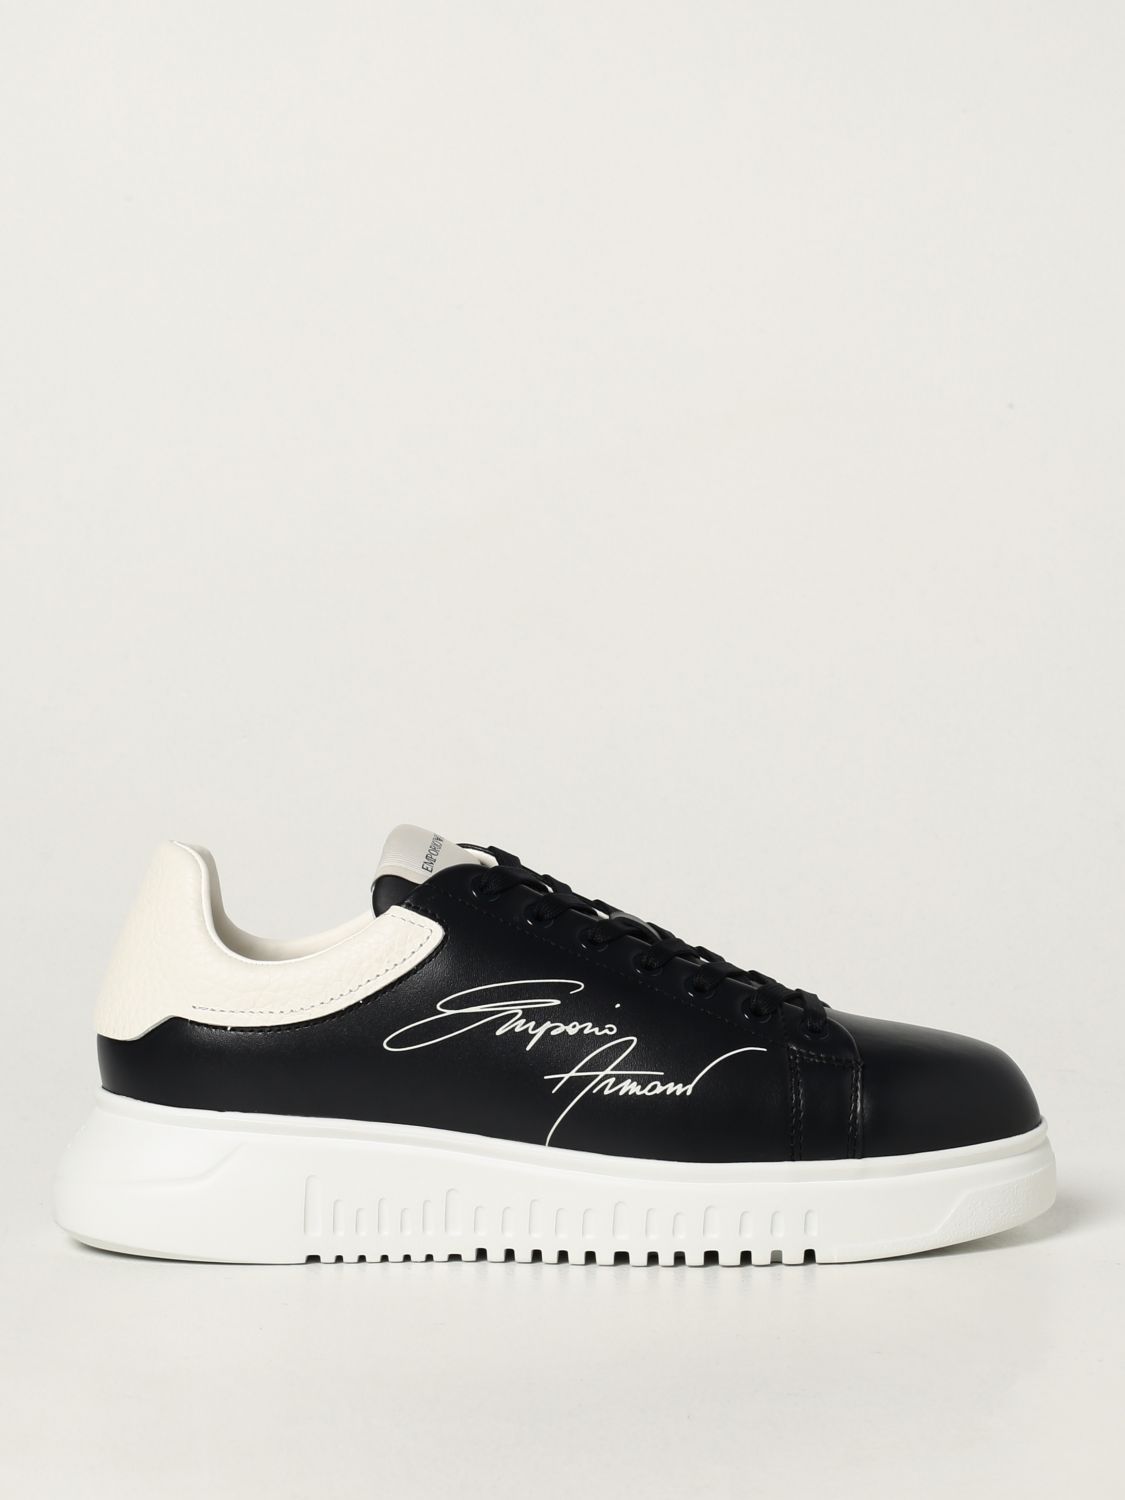 Sneakers Emporio Armani in pelle vera con logo signature